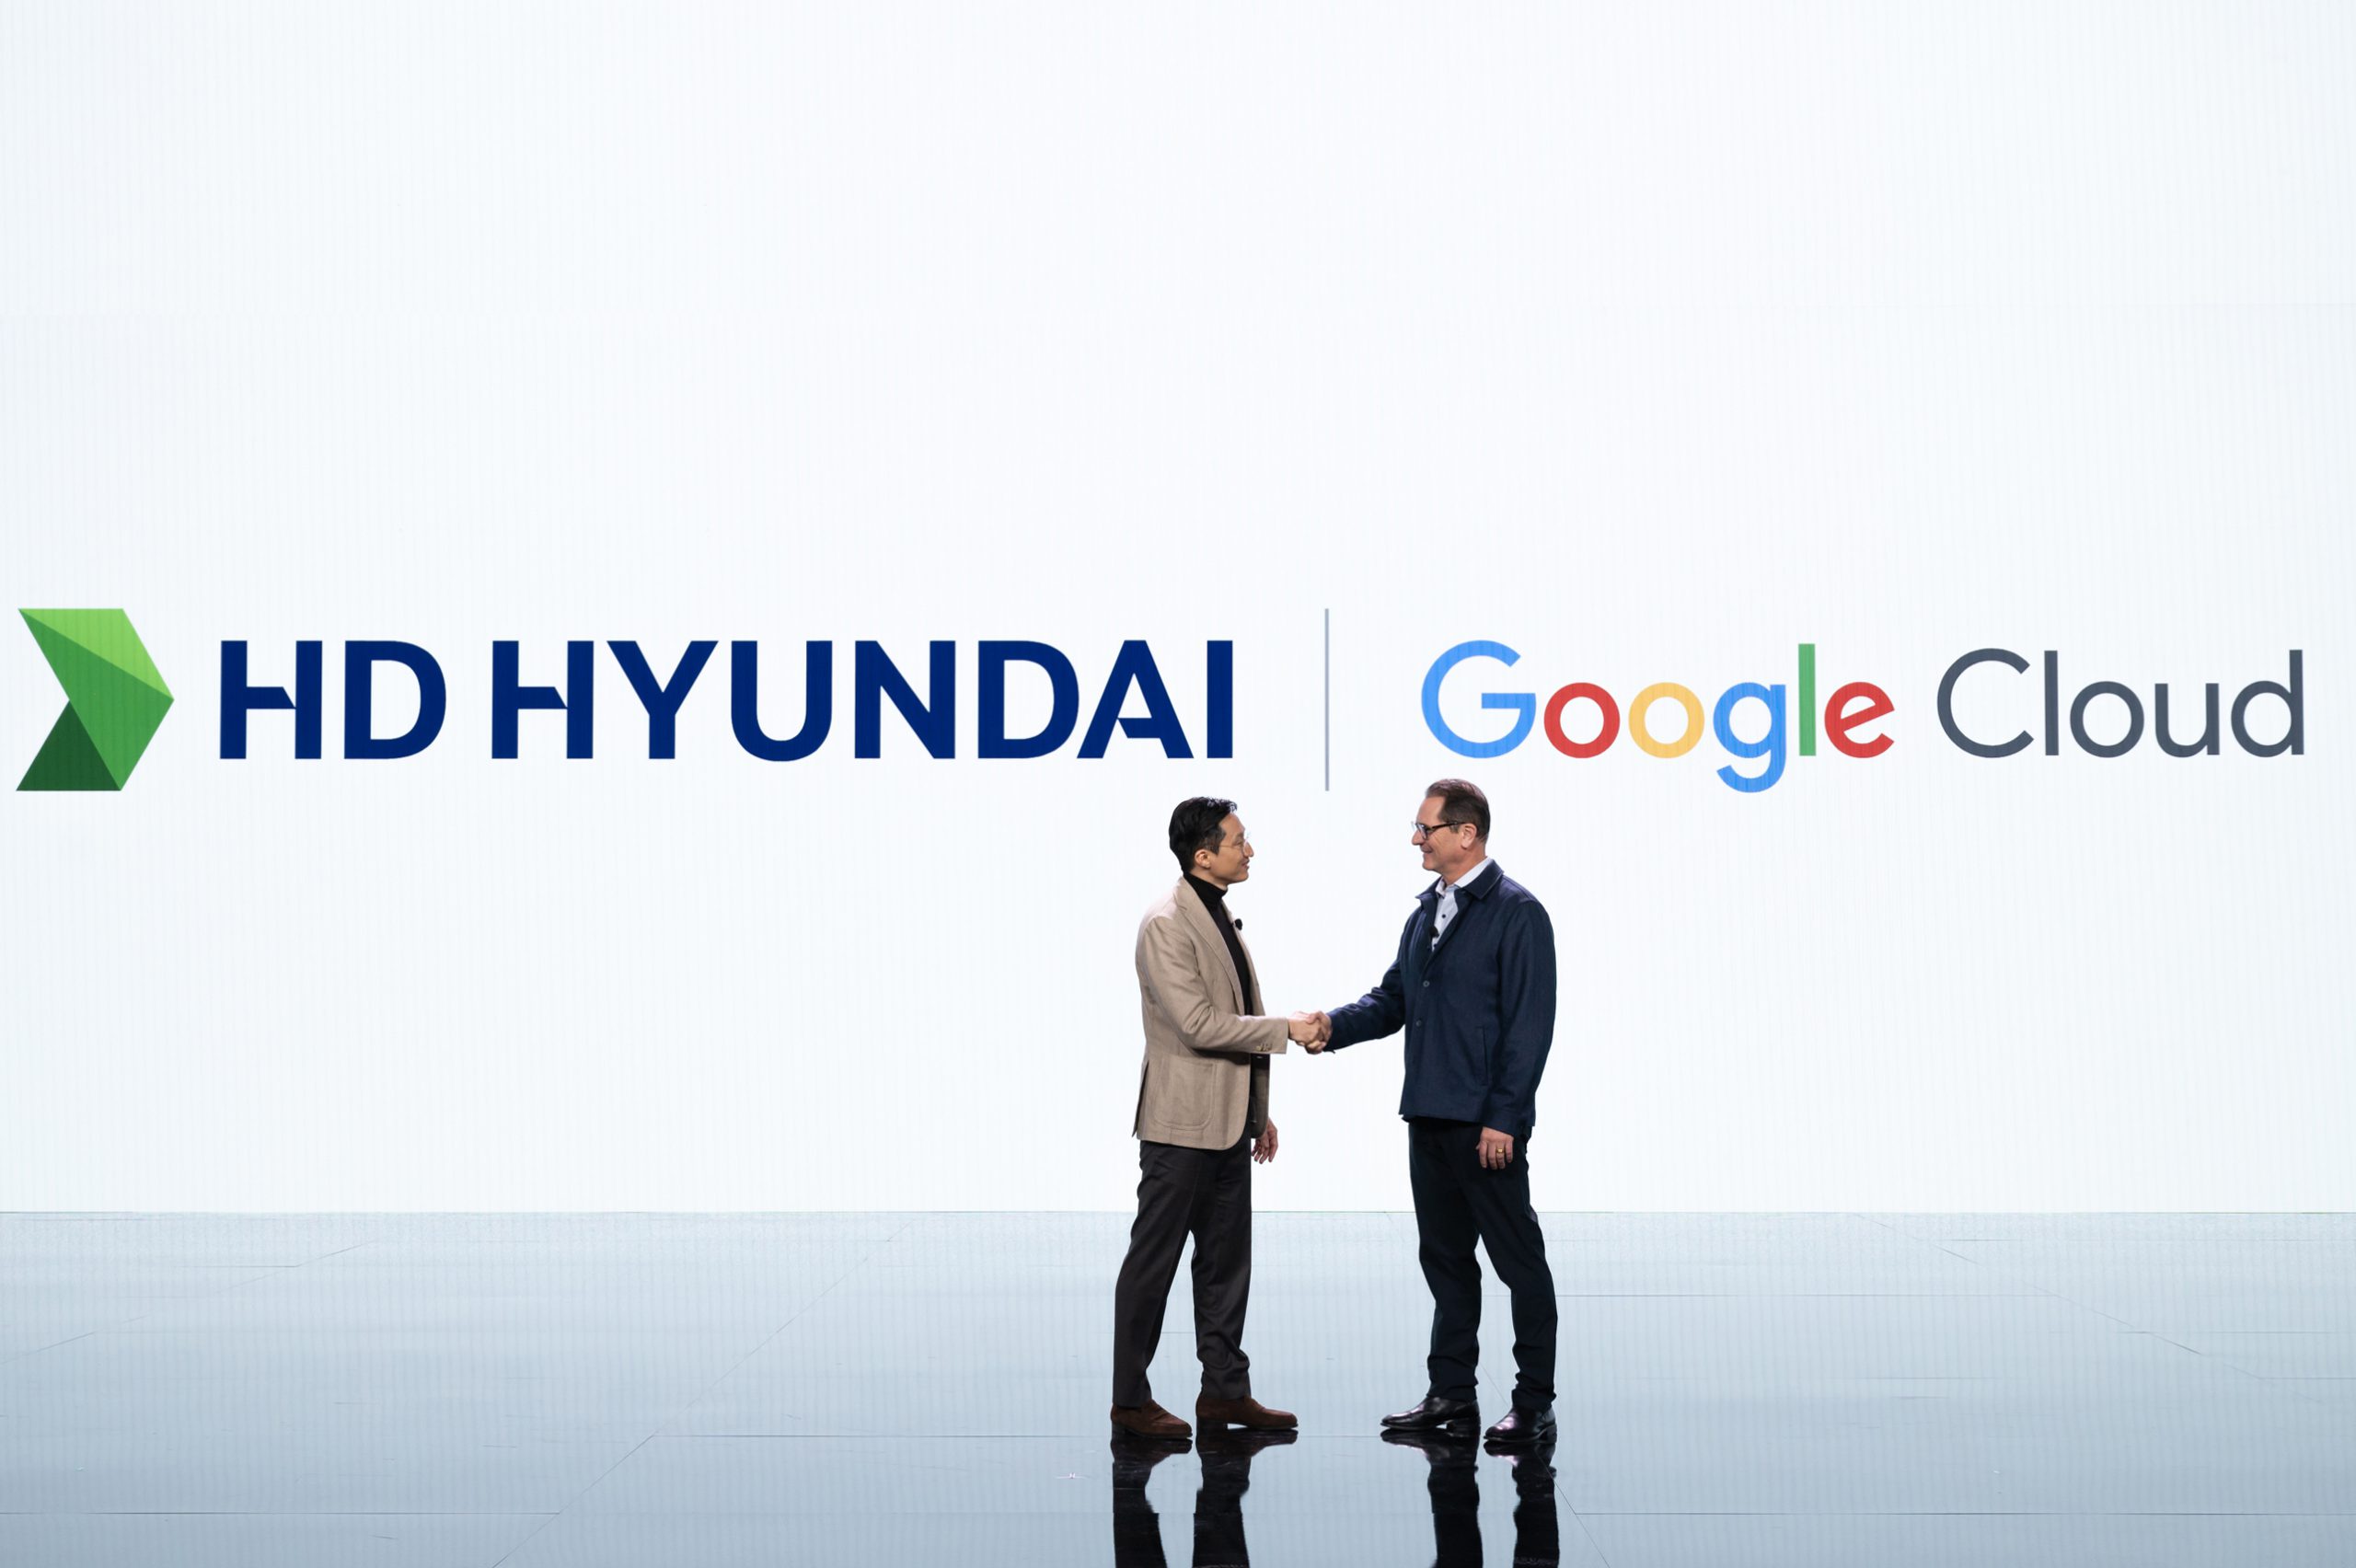 HD HYUNDAI è oggi uno dei colossi del settore industriale più tecnologici